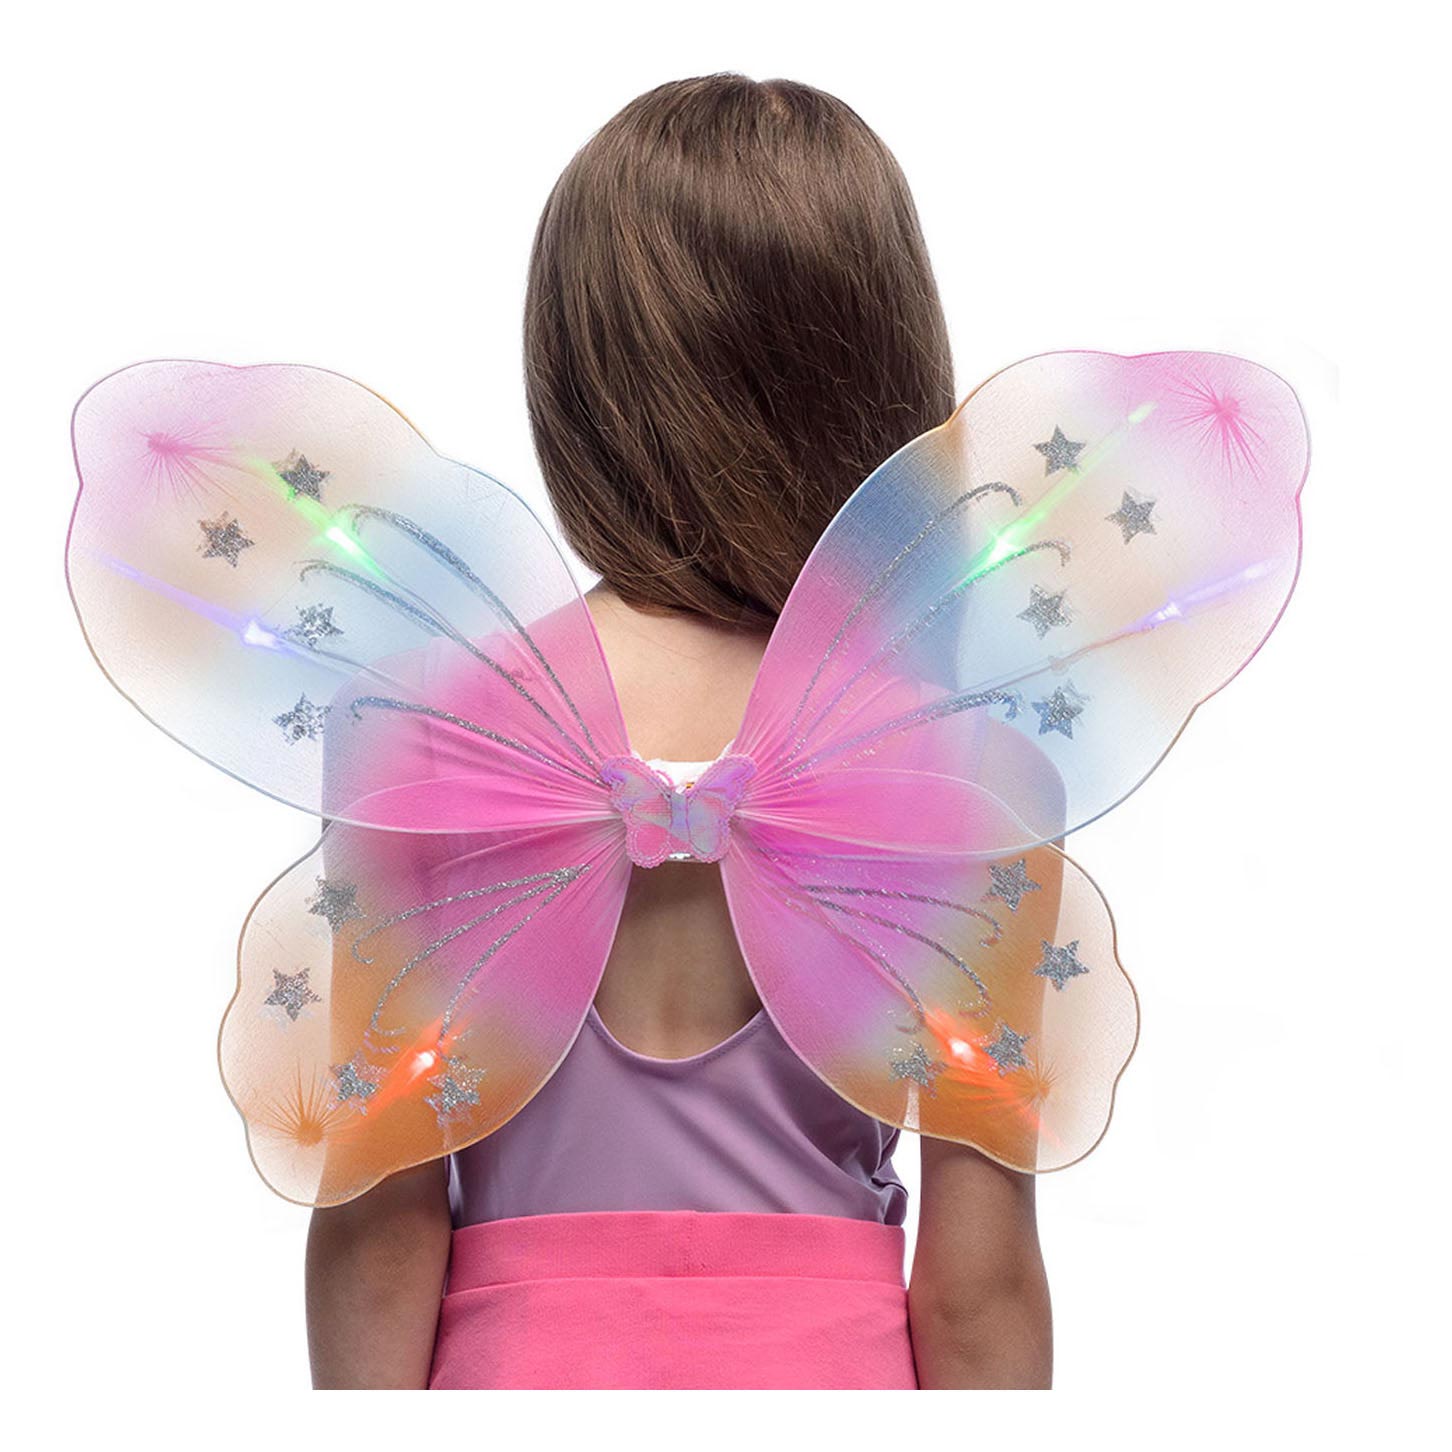 Verkleidungsset Schmetterlingsflügel mit LED-Lichtern